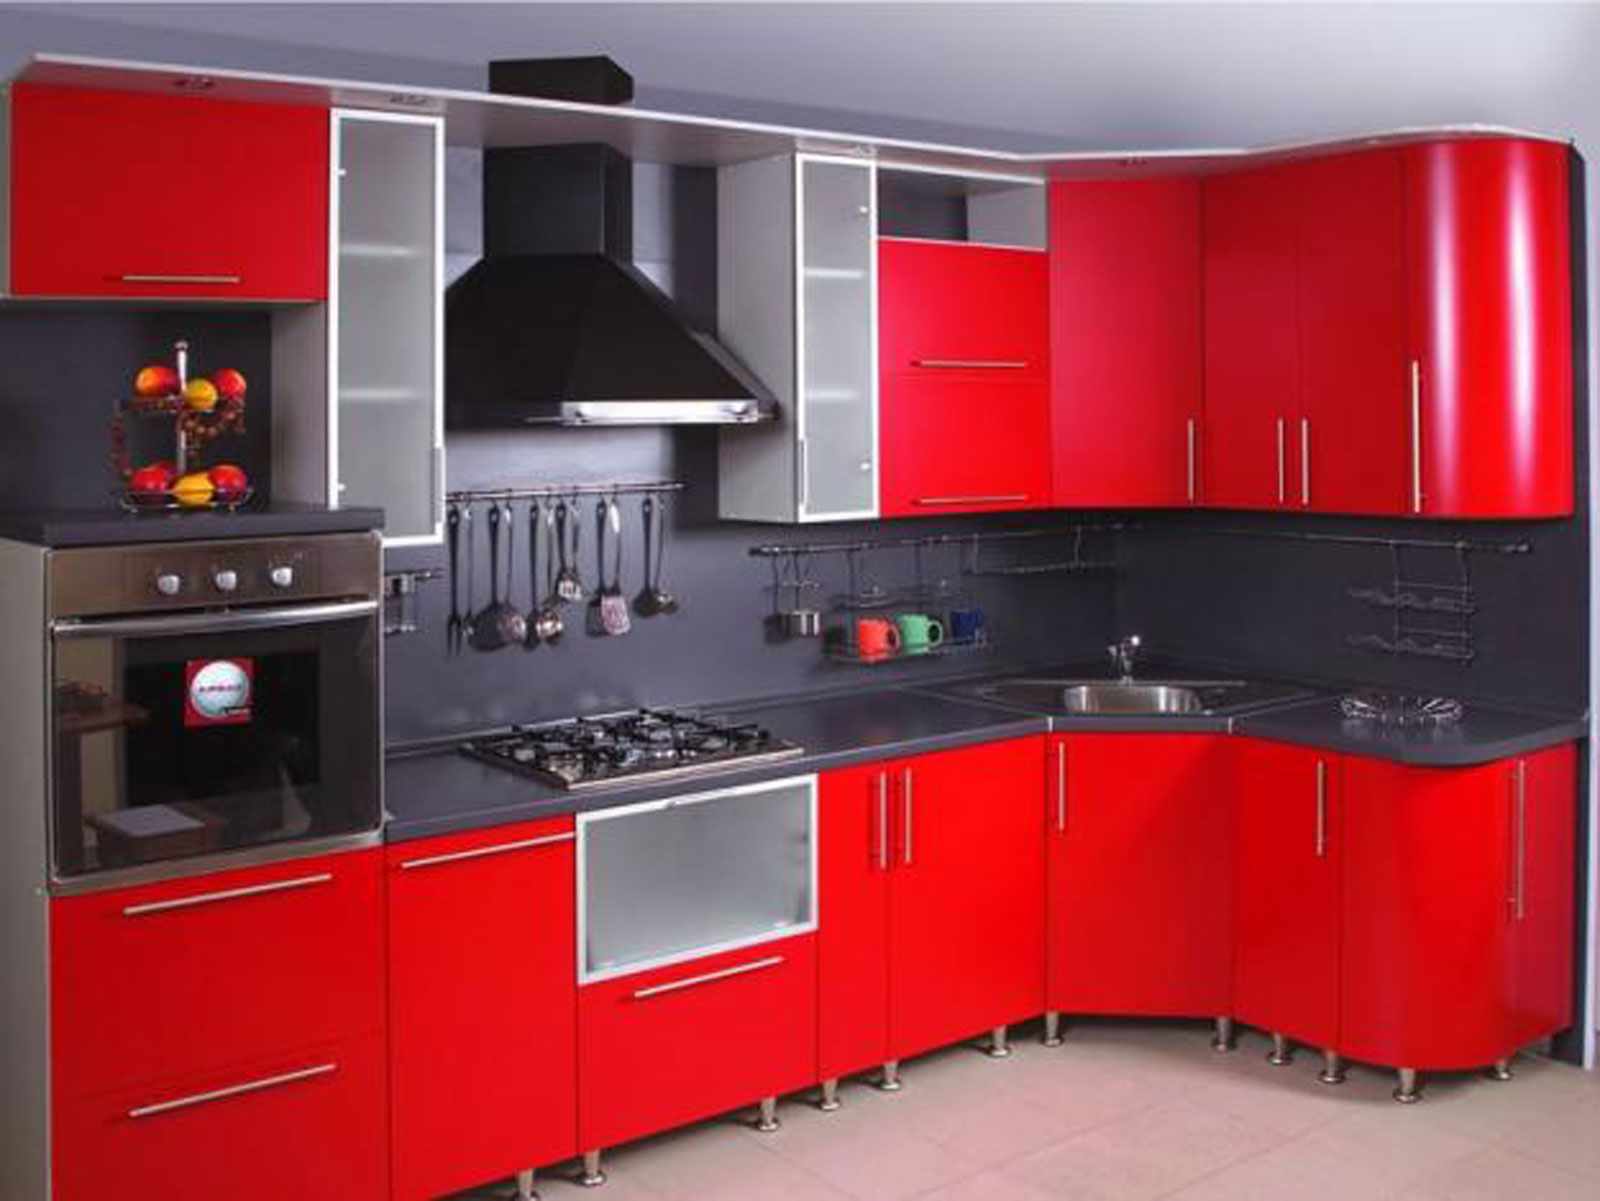 แนวคิดของครัวสีแดงสว่างภายใน